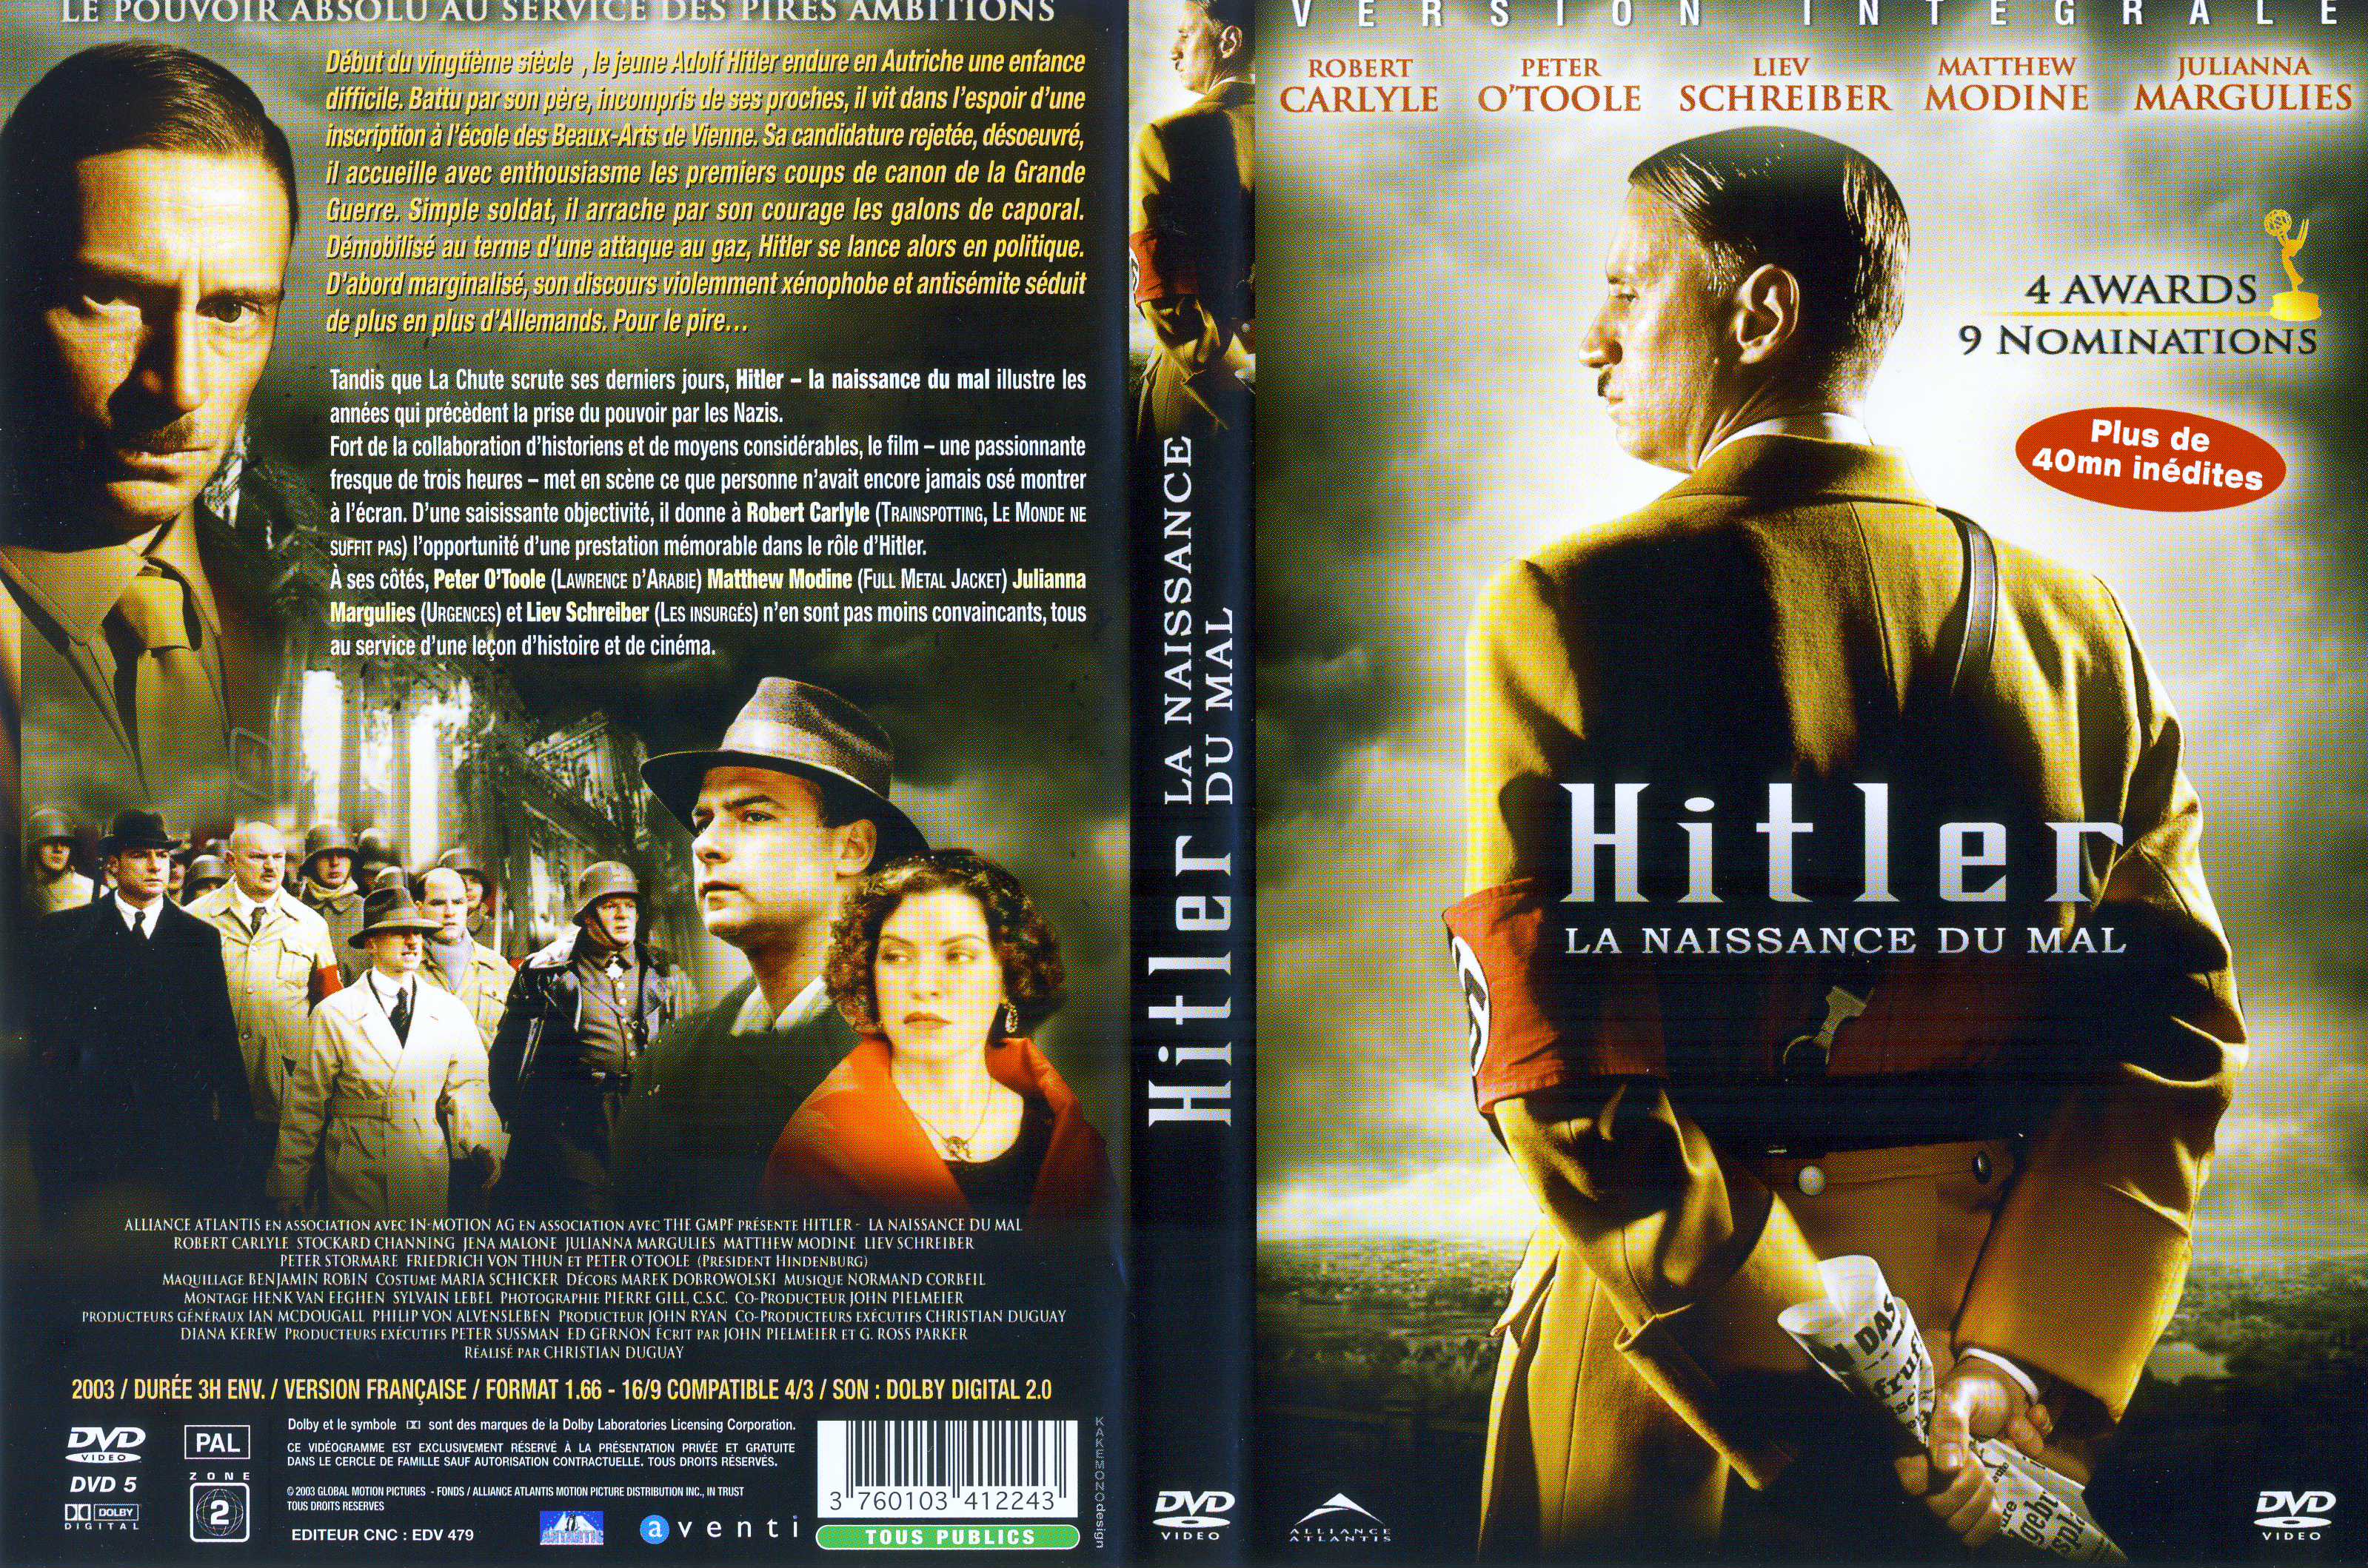 Jaquette DVD Hitler la naissance du mal v2